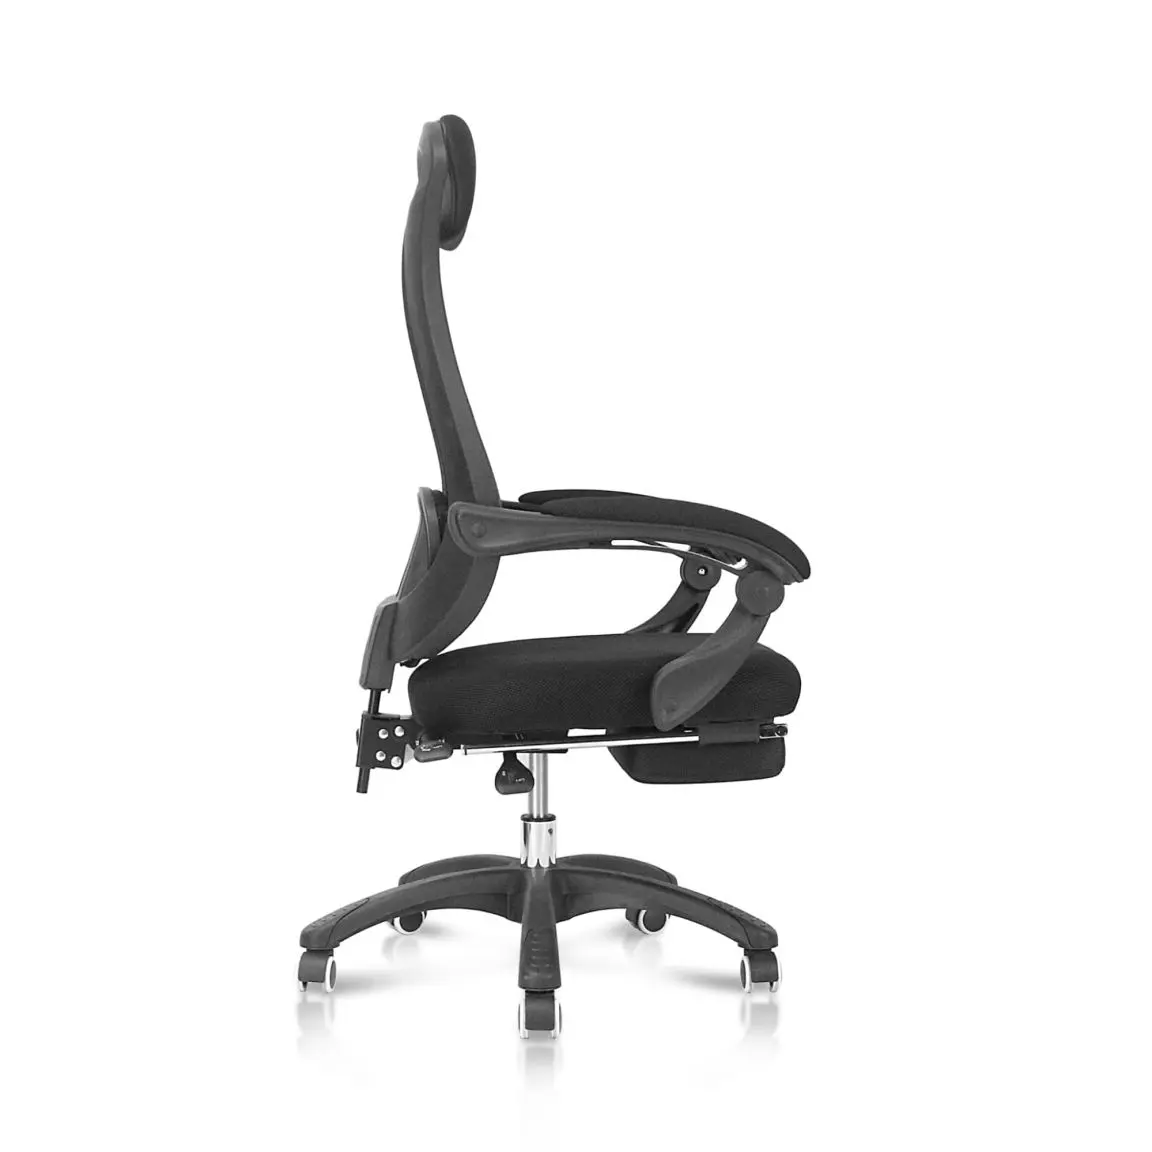 Mẫu ghế văn phòng cao cấp nhập khẩu có để chân giúp người dùng sử dụng được cho nhiều mục đích khác nhau